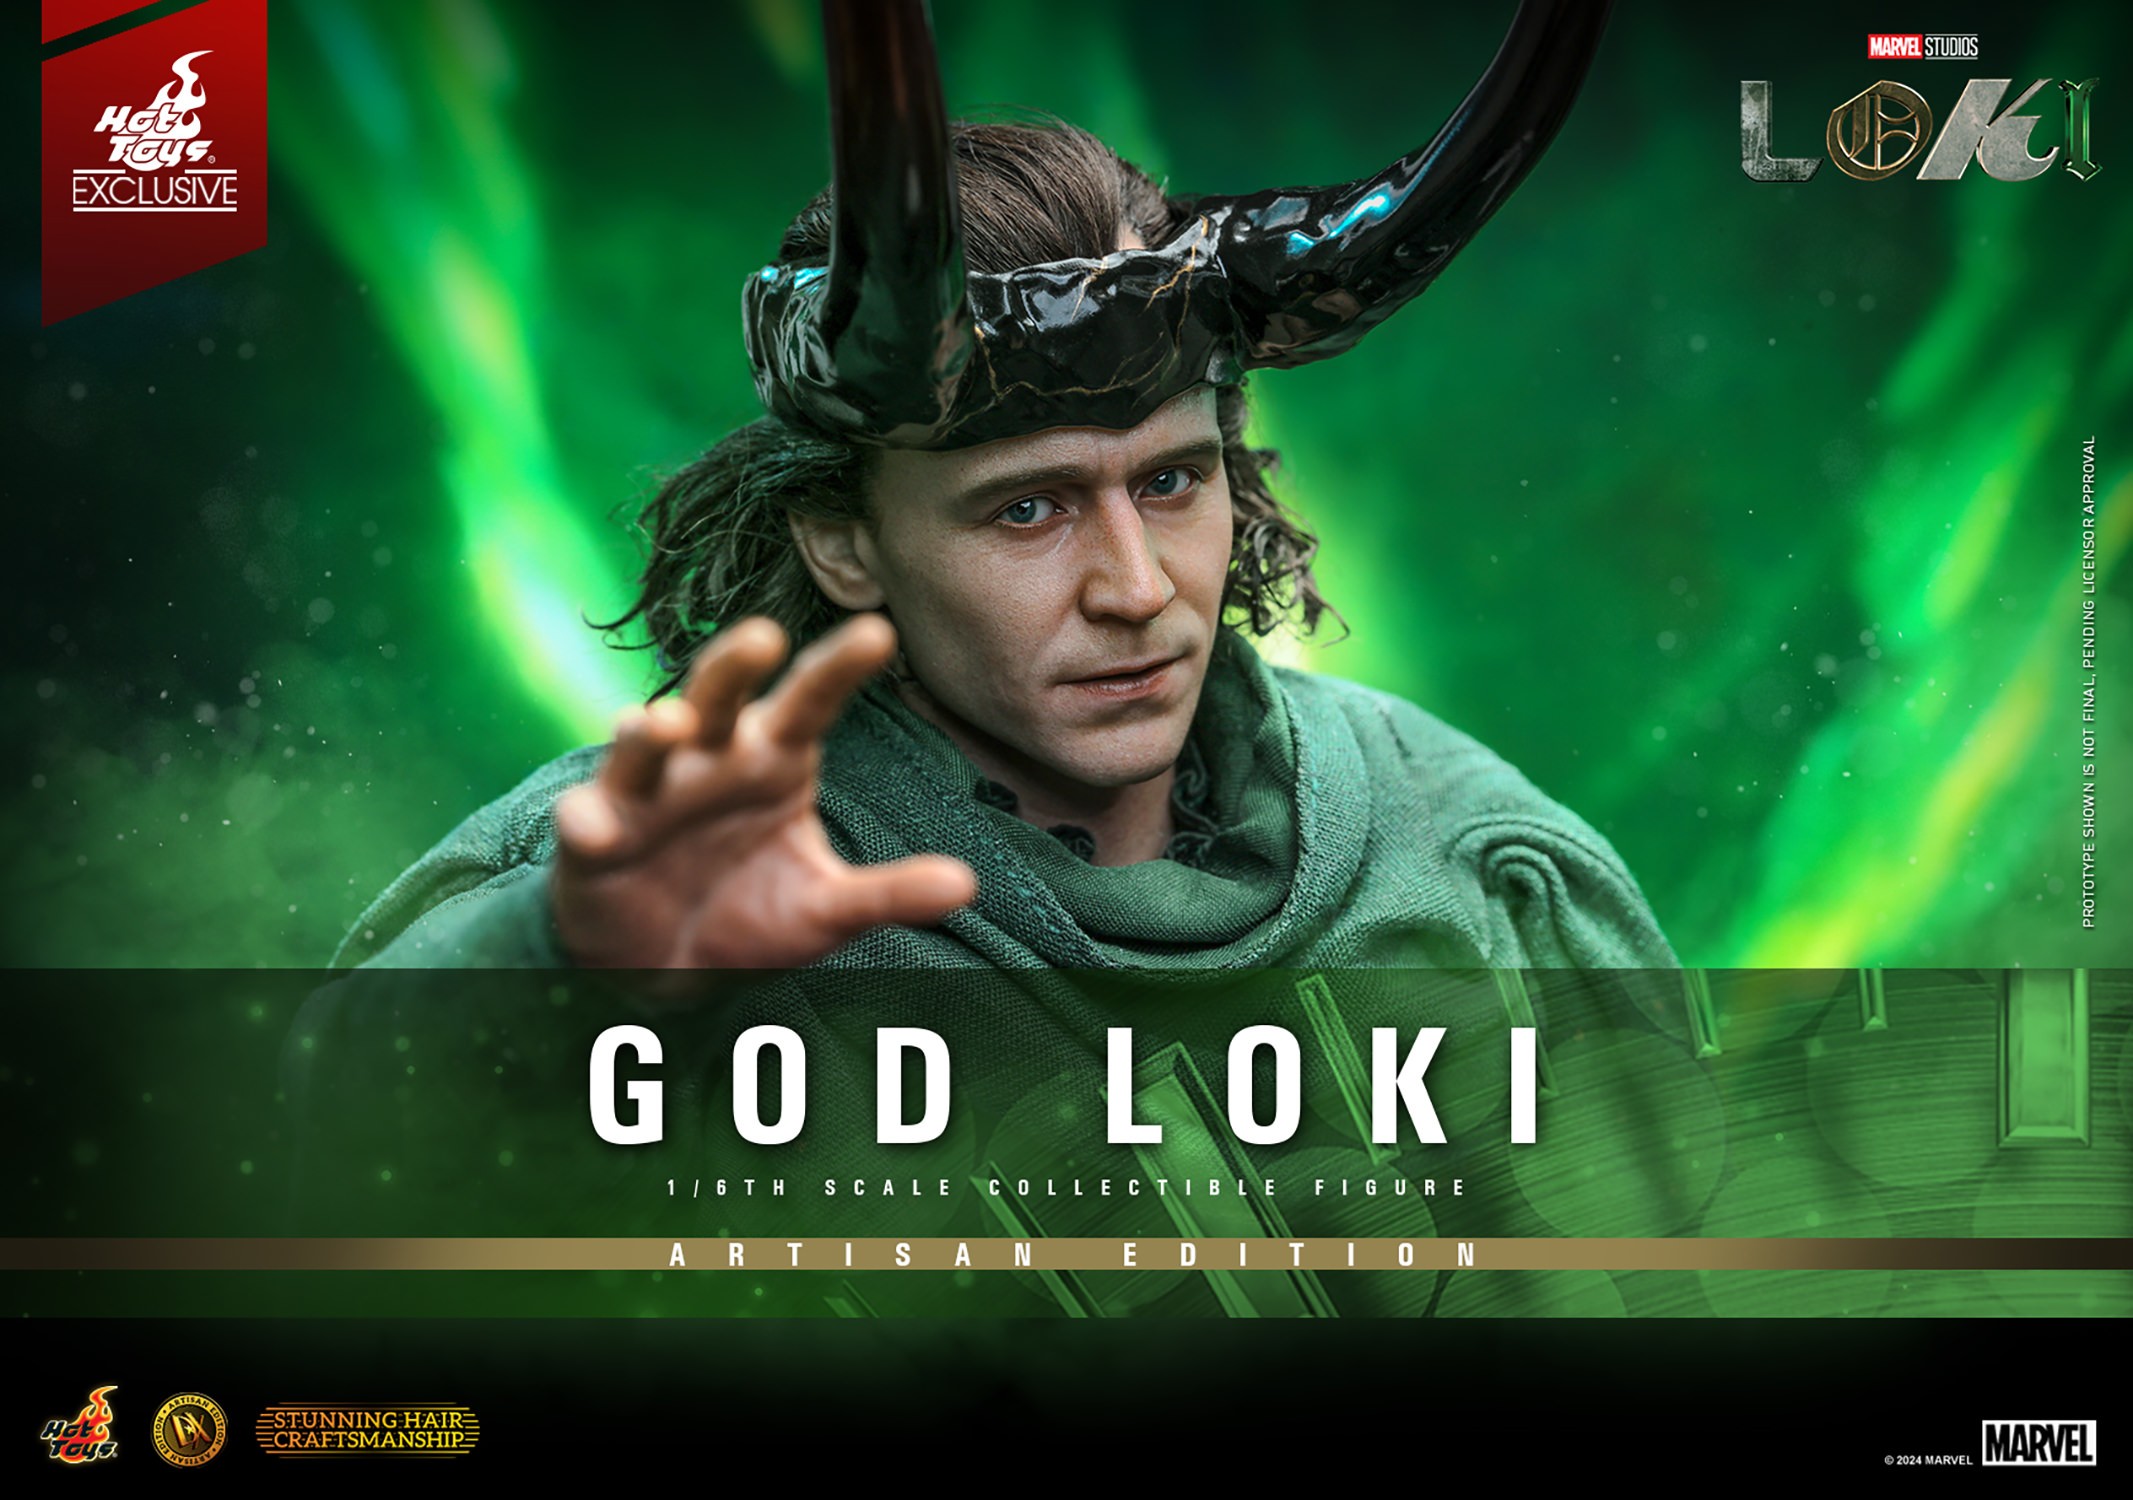 God Loki (Artisan Edition) (Prototype Shown) View 1